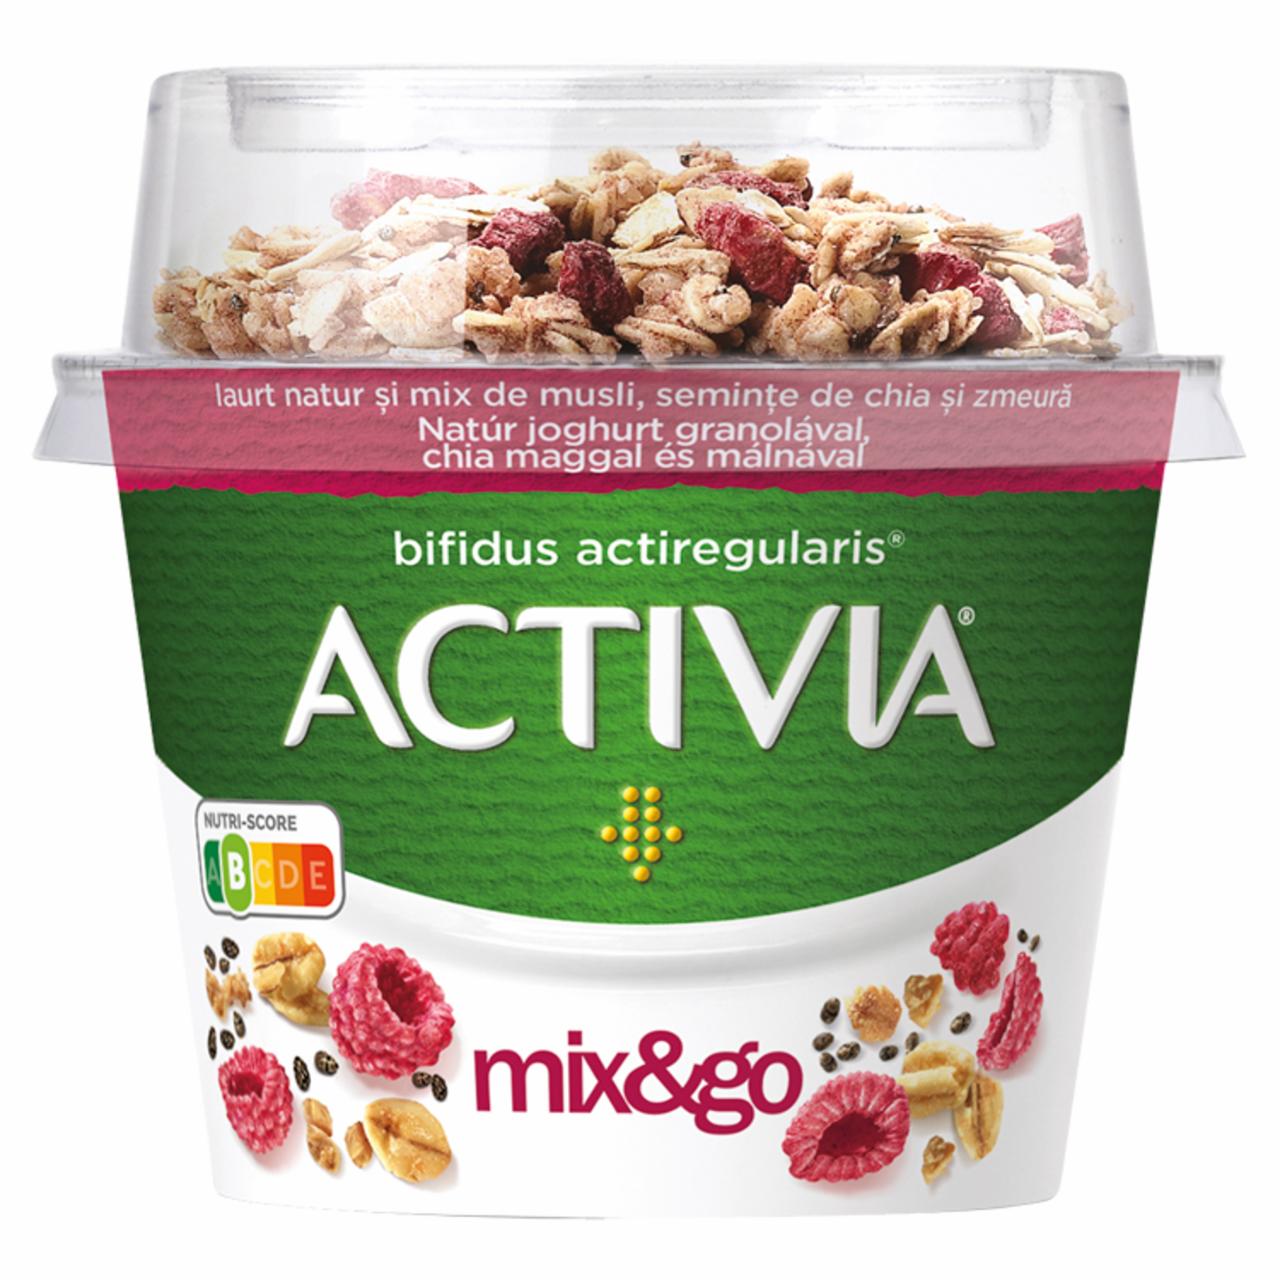 Képek - Danone Activia mix&go natúr joghurt granolával, chia maggal és málnával 170 g